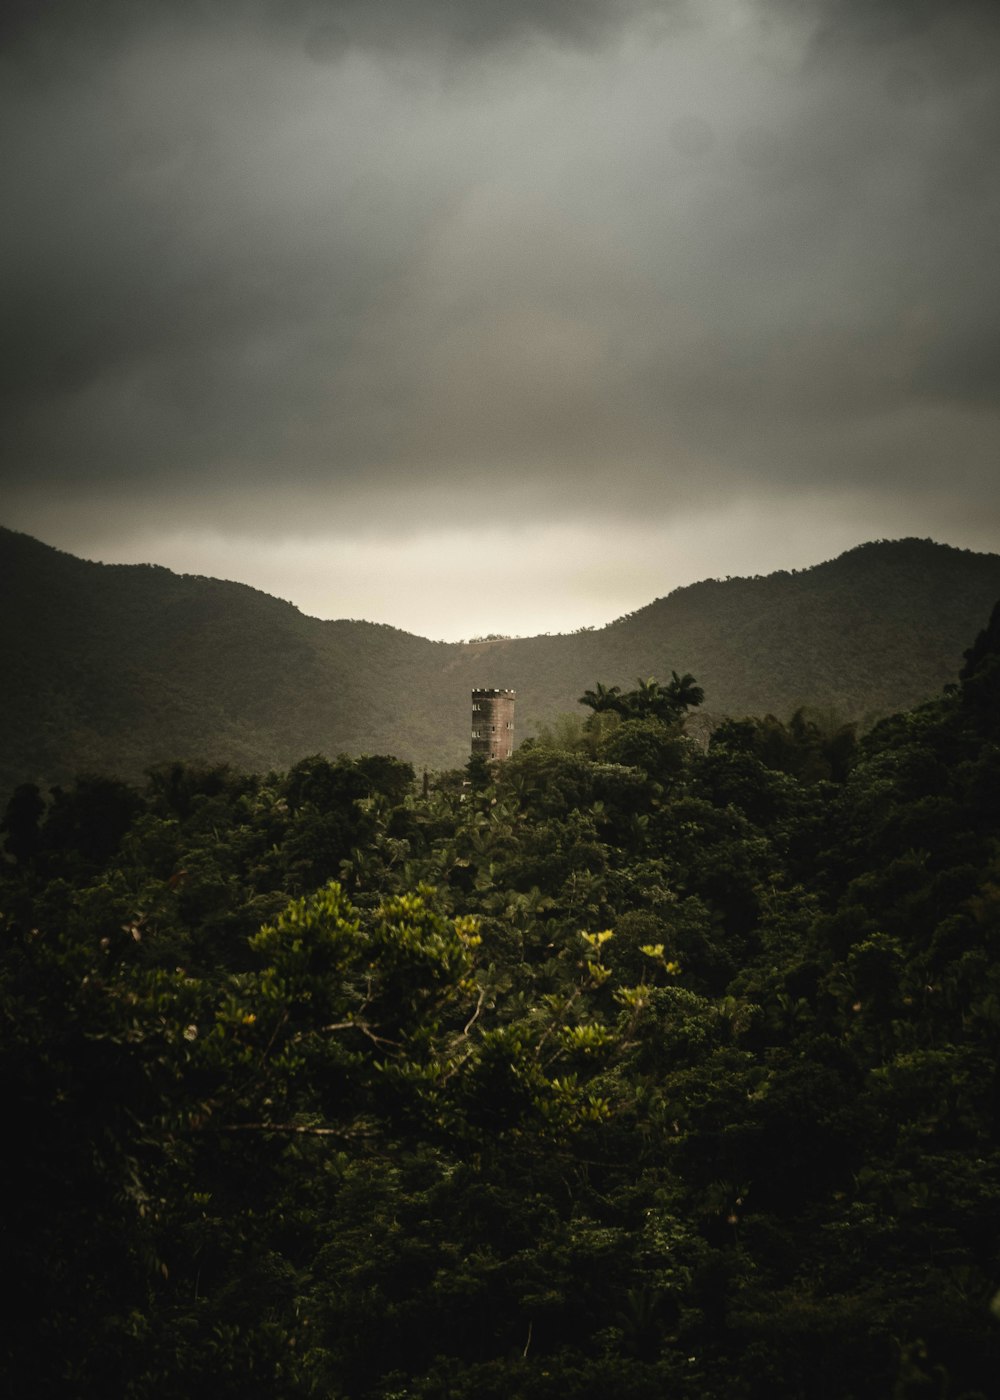 Ein Turm mitten im Wald unter bewölktem Himmel